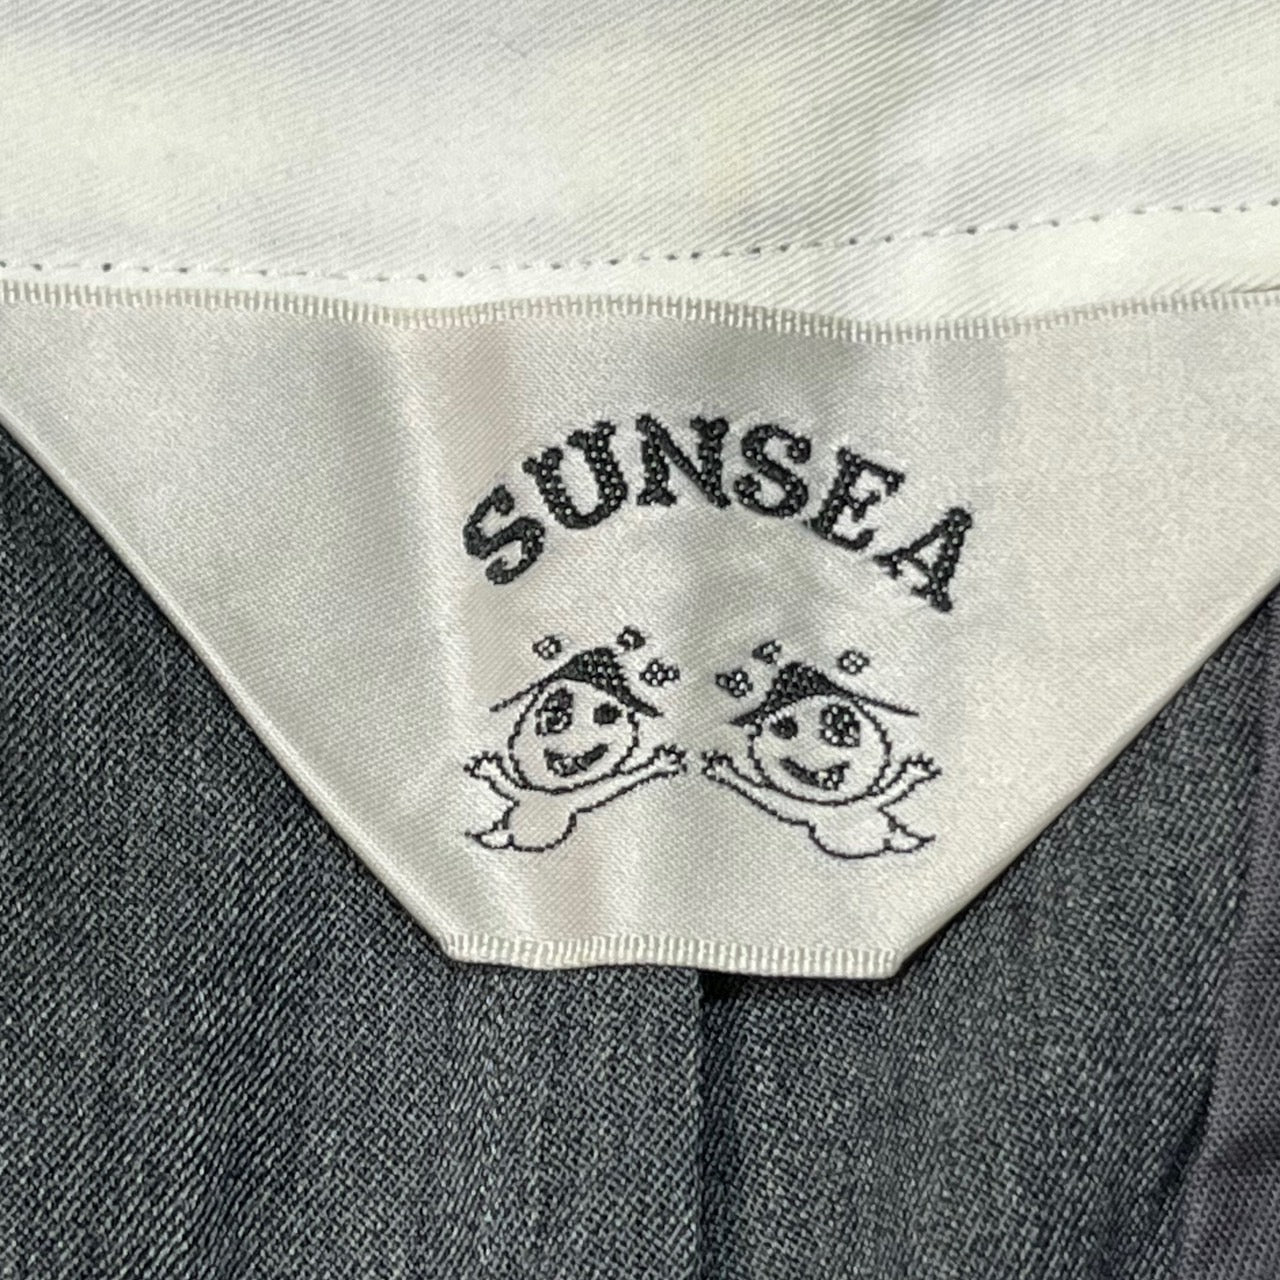 SUNSEA(サンシー) 18SS Summer Wool TEKE TEKE Pants/サマーウールテケテケパンツ/スラックス 18S40 SIZE 2(M) グレー